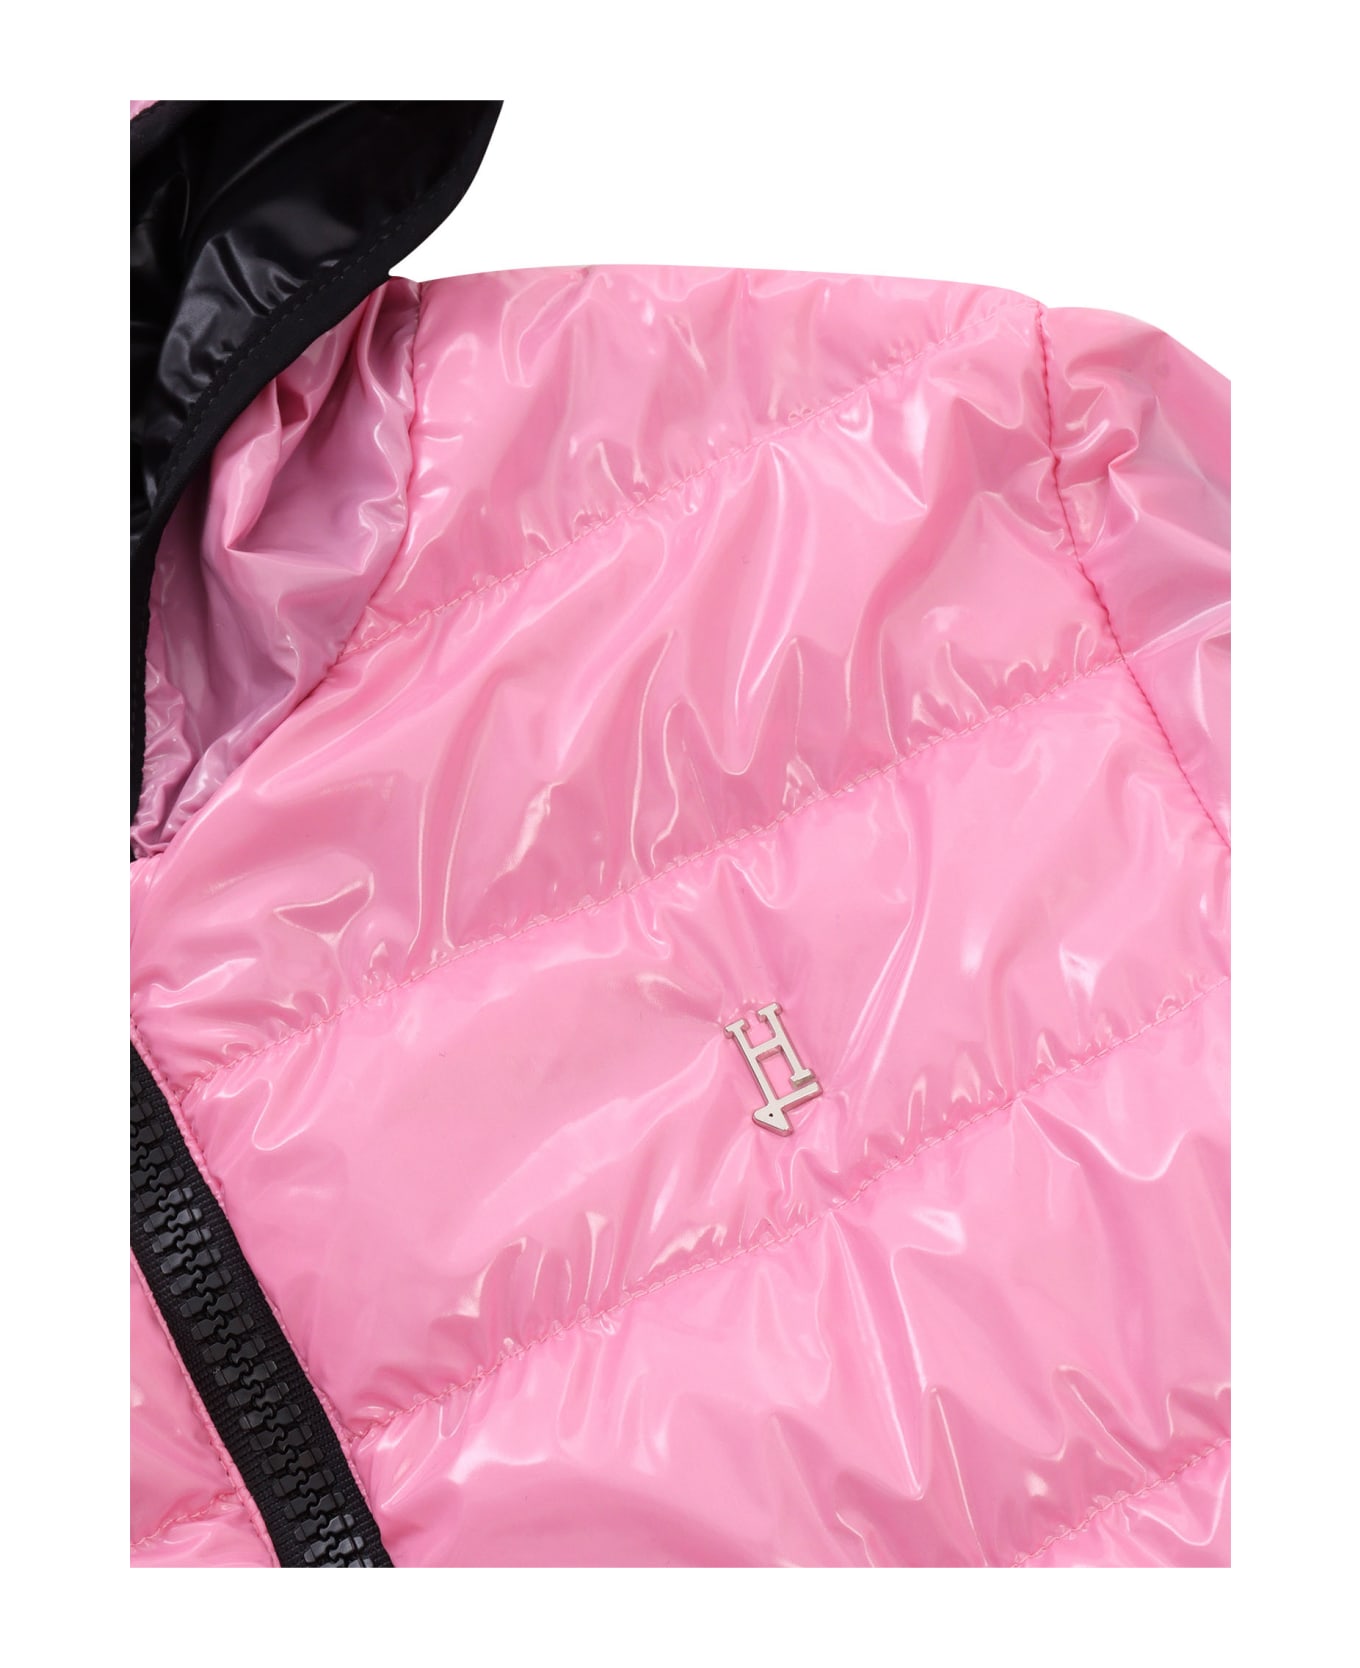 Herno Pink Padded Jacket - PINK